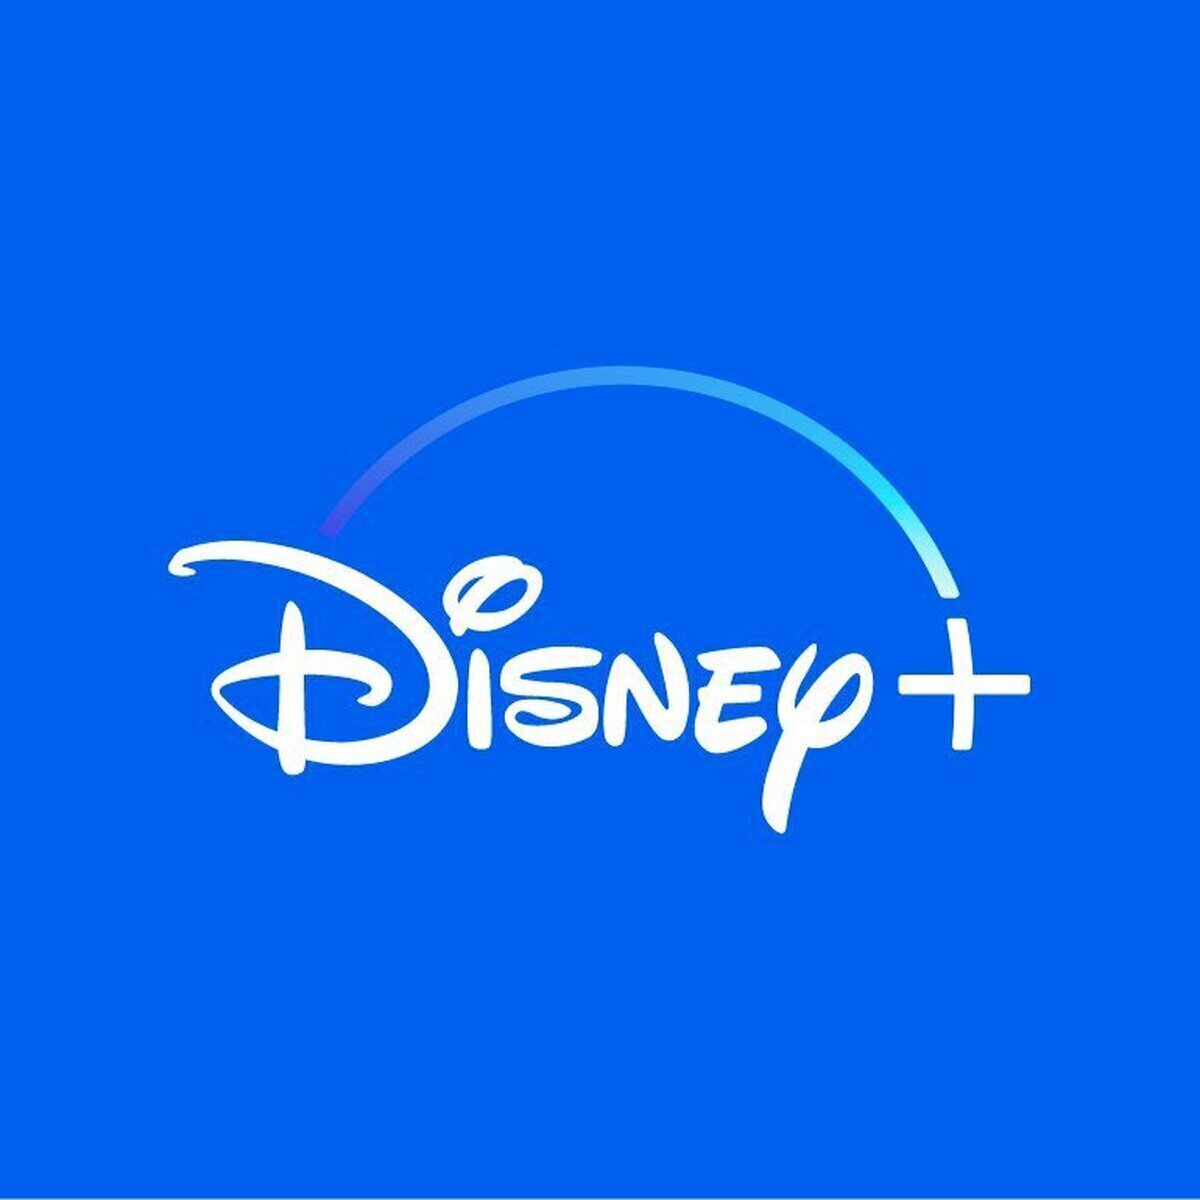 Disney+ ha perdido 1.3 millones de subscriptores en el último cuarto de año a causa de su incremento de precios y pocos estrenos